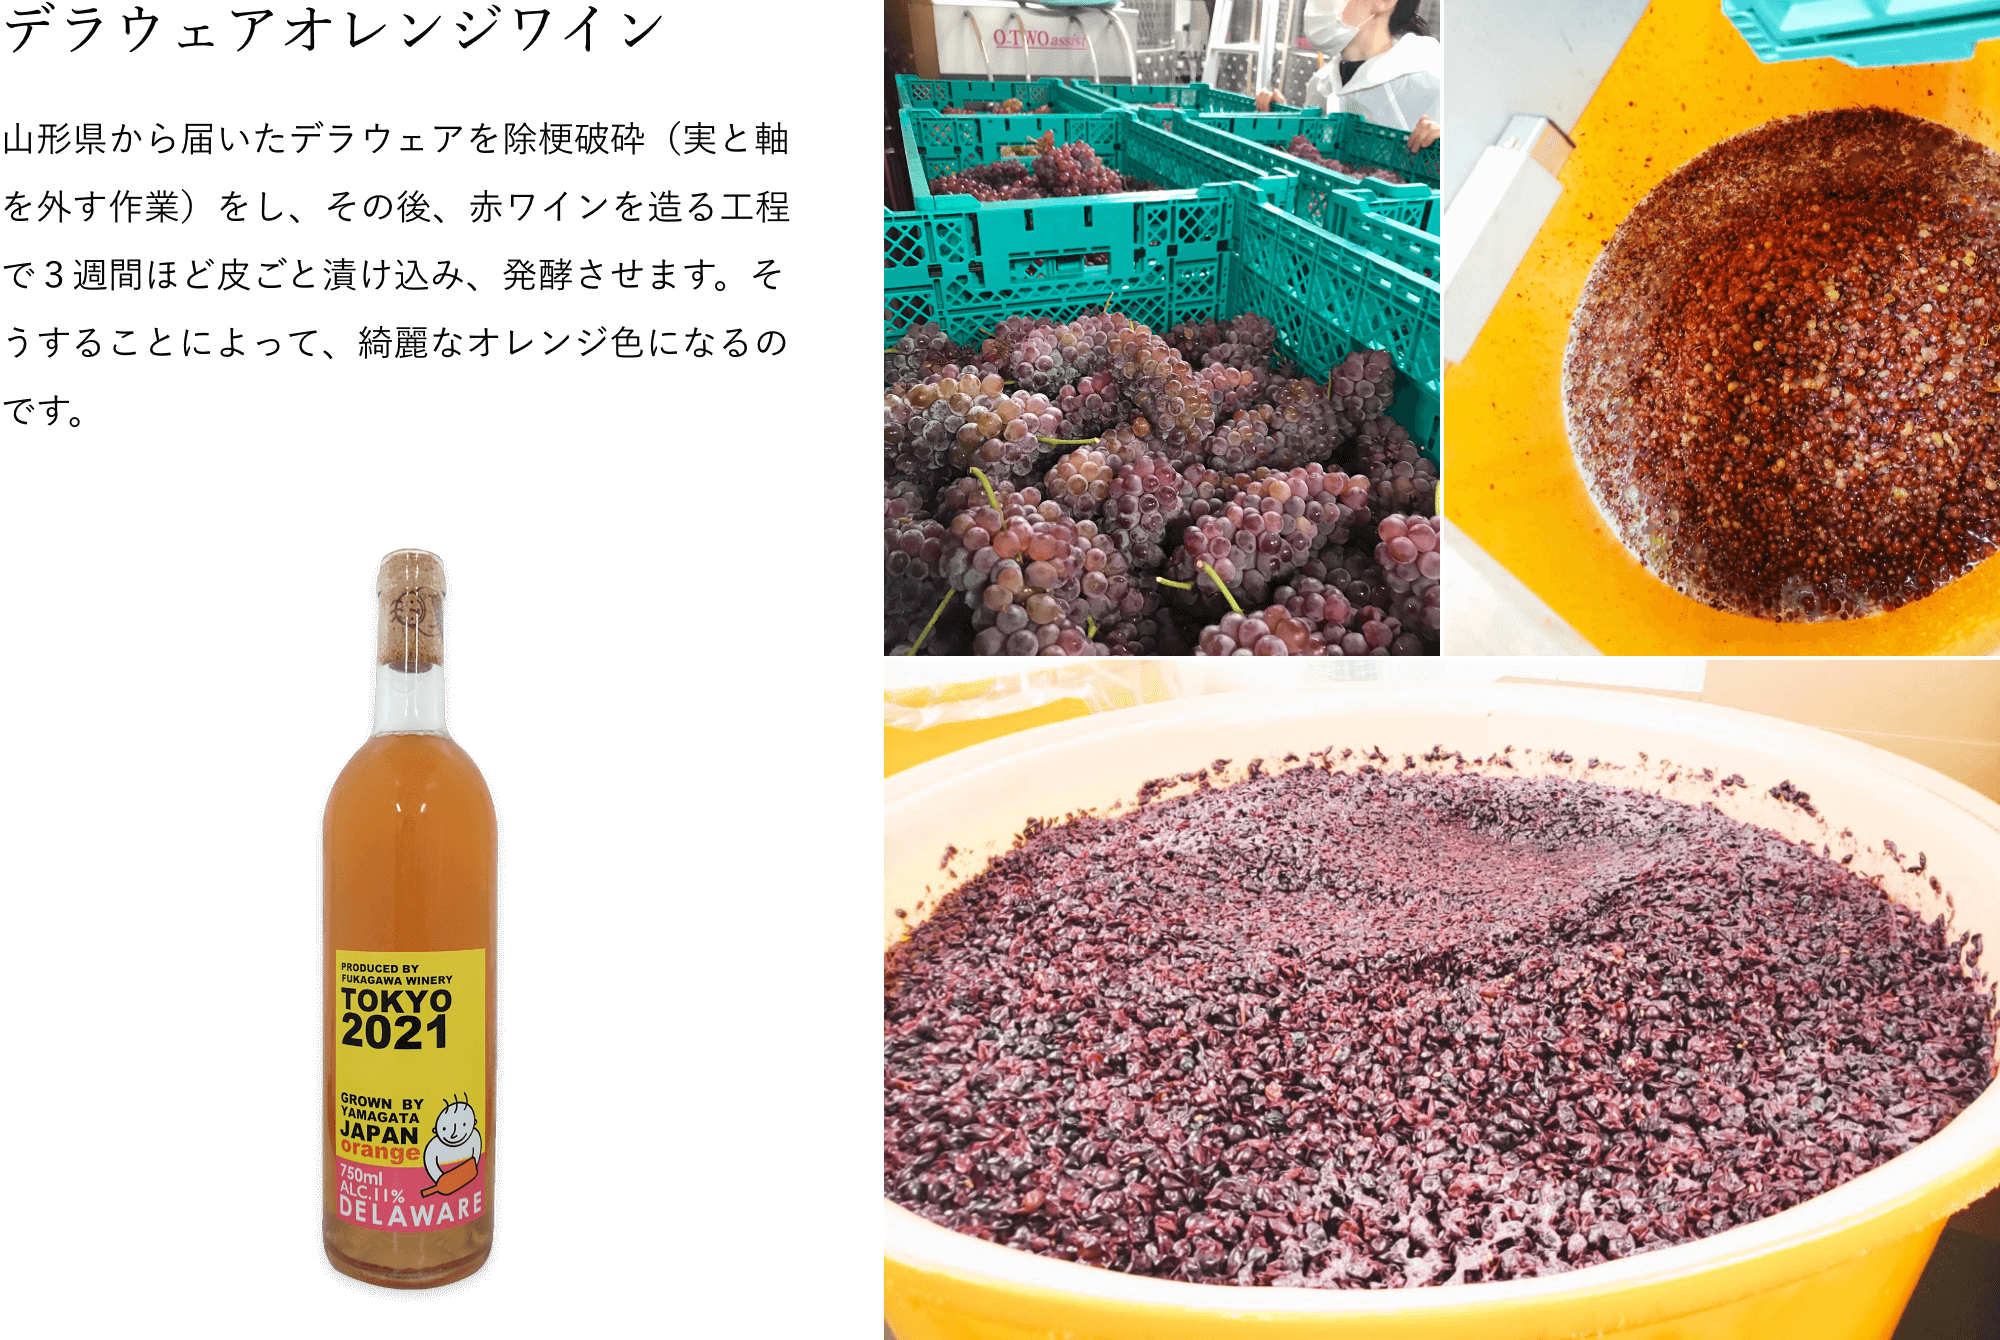 デラウェアオレンジワイン　山形県から届いたデラウェアを除梗破砕（実と軸を外す作業）をし、その後、赤ワインを造る工程で３週間ほど皮ごと漬け込み、発酵させます。そうすることによって、綺麗なオレンジ色になるのです。